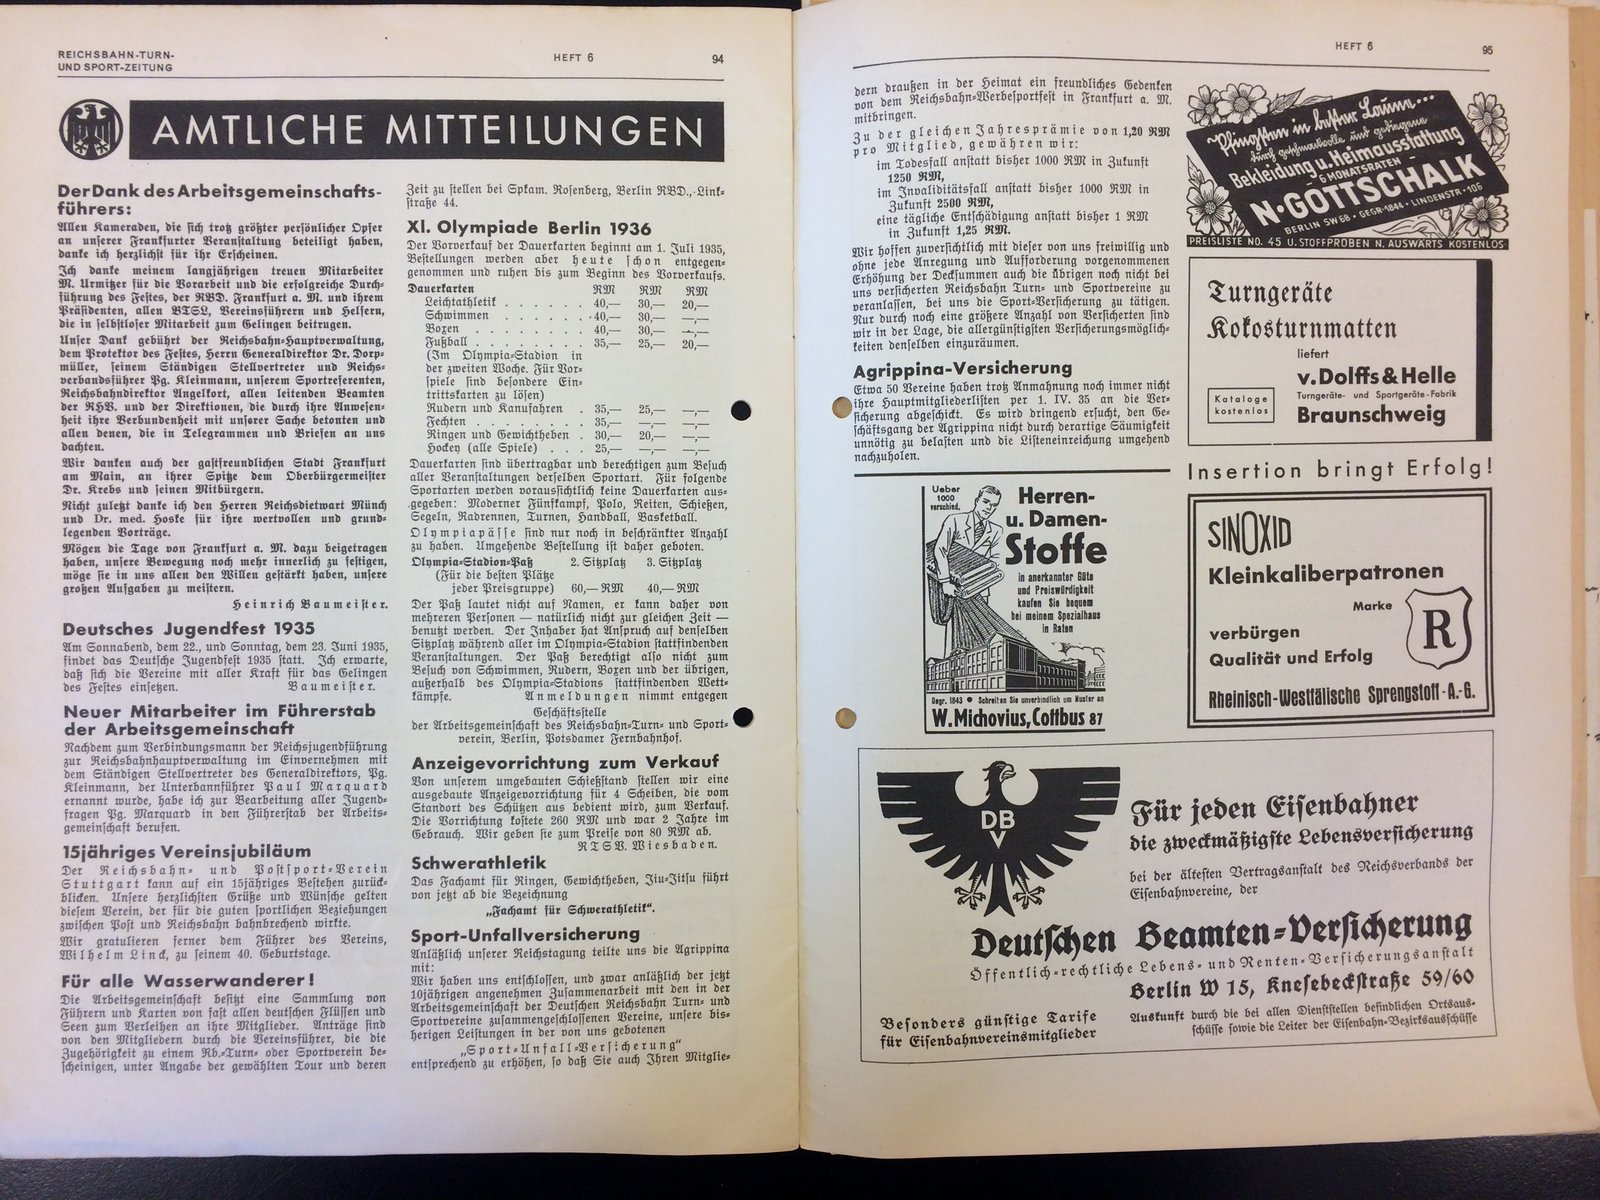 Festschrift Seite 94-95 ca. 1935